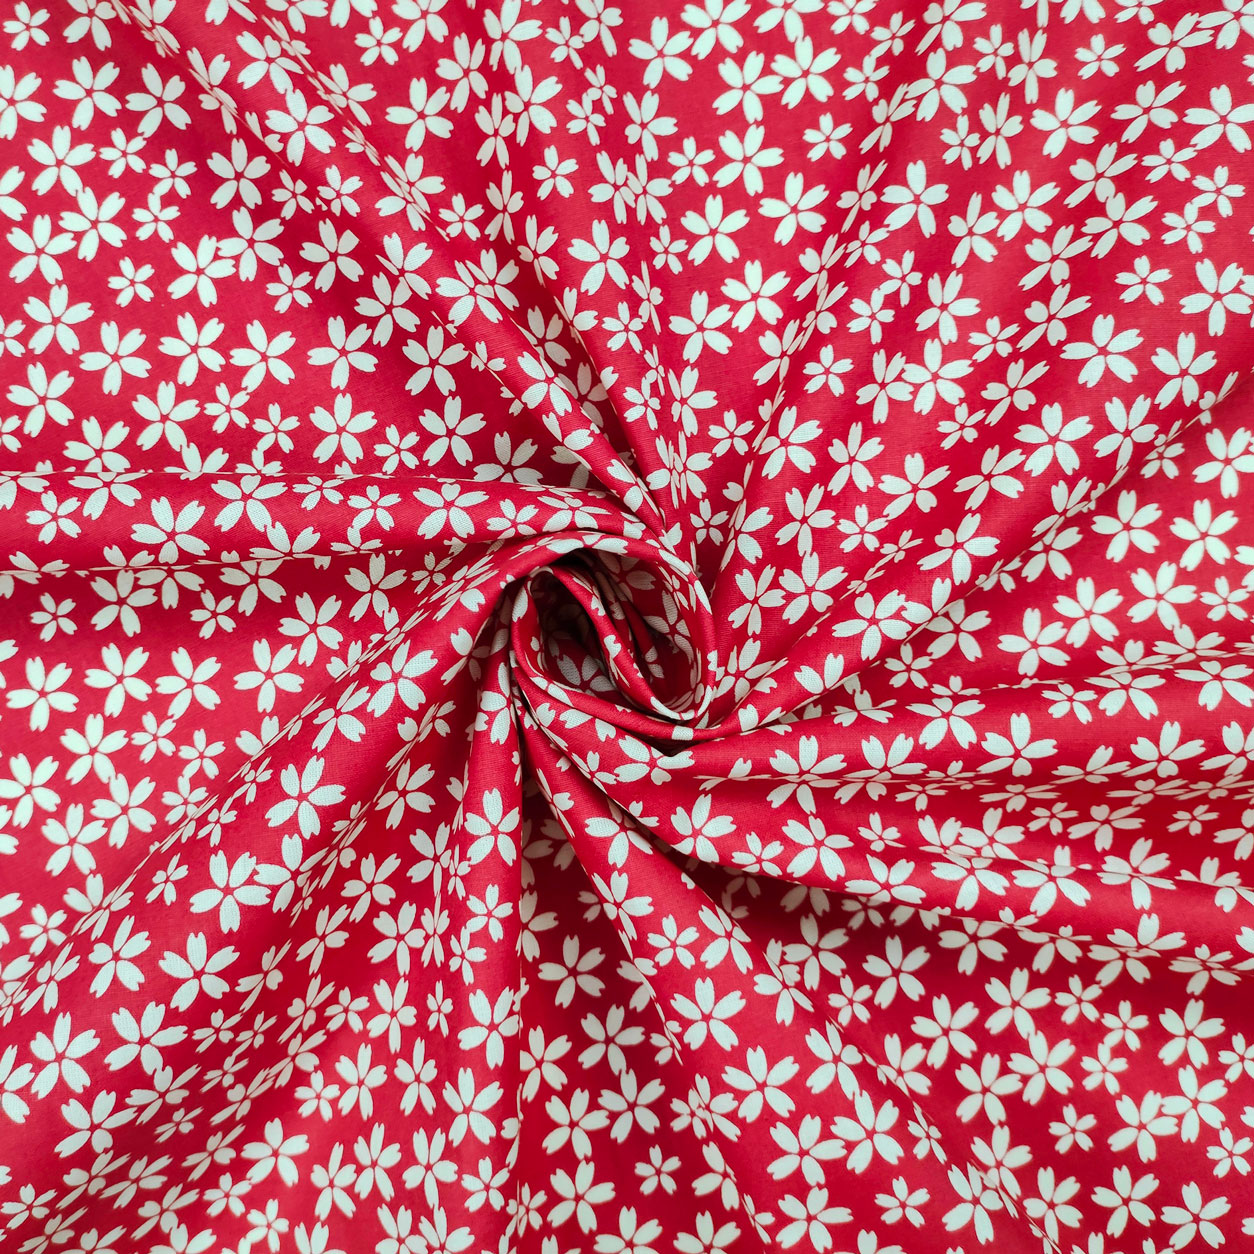 stoffa in cotone fiore panna rosso